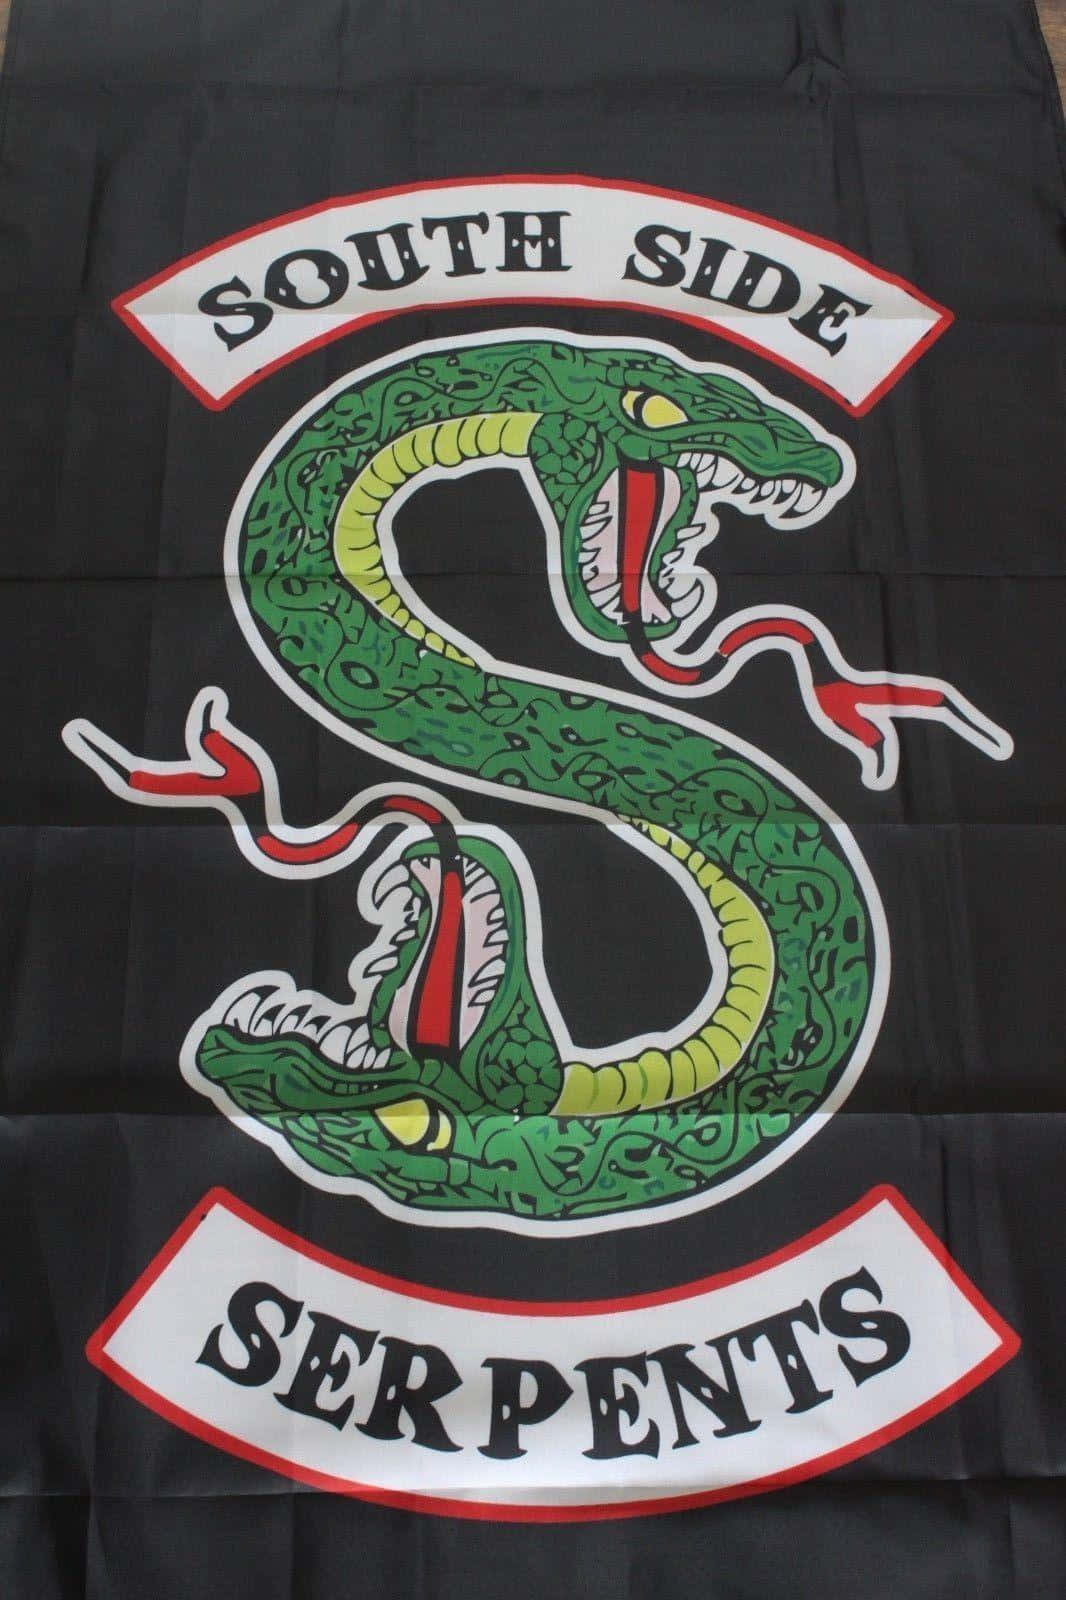 Representeos Southside Serpents Com Orgulho. Papel de Parede